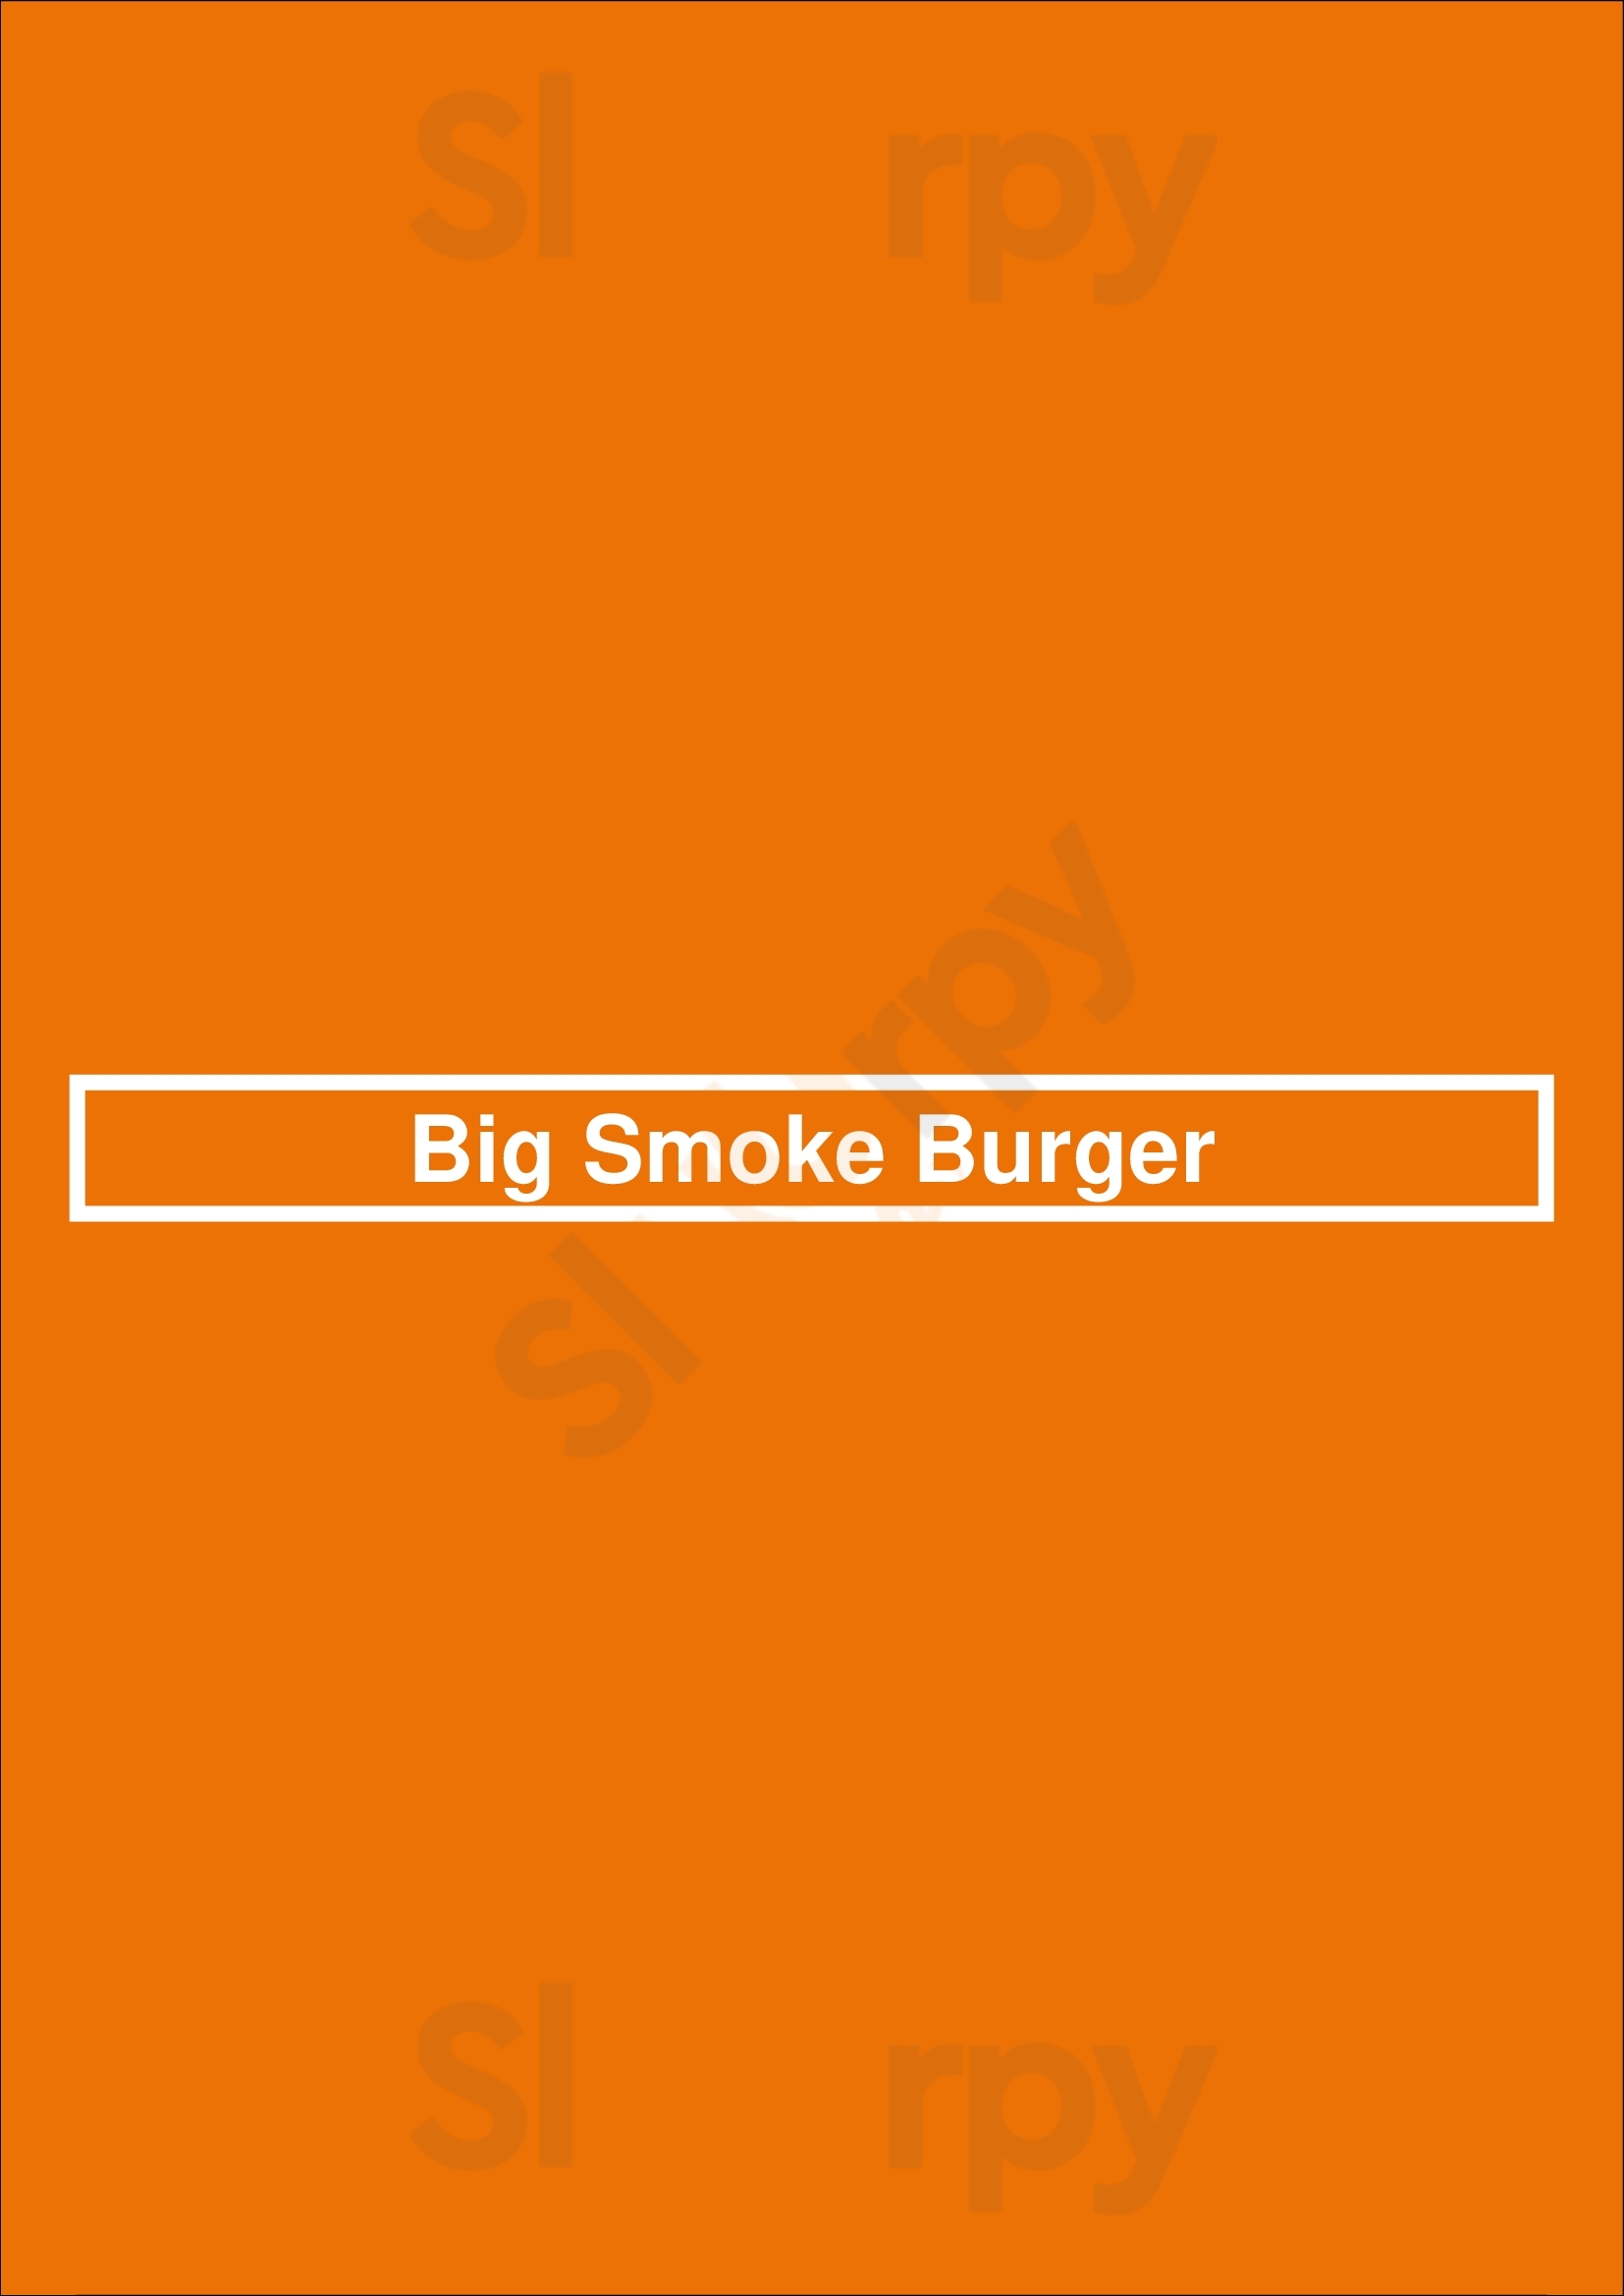 Big Smoke Burger Toronto Menu - 1